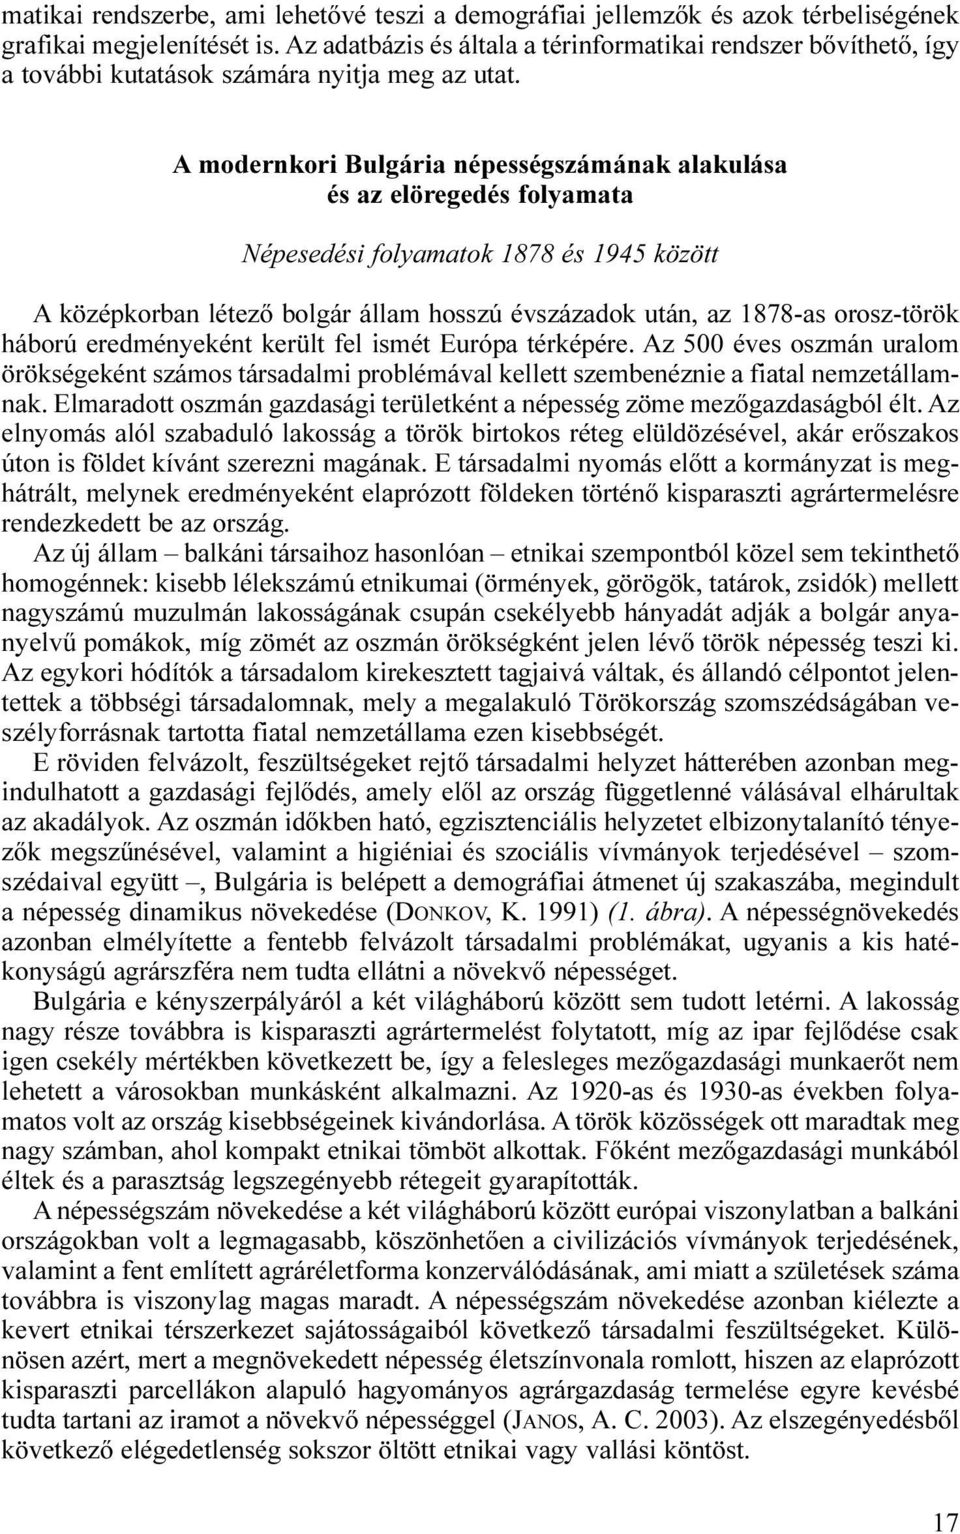 A modernkori Bulgária népességszámának alakulása és az elöregedés folyamata Népesedési folyamatok 1878 és 1945 között A középkorban létező bolgár állam hosszú évszázadok után, az 1878-as orosz-török